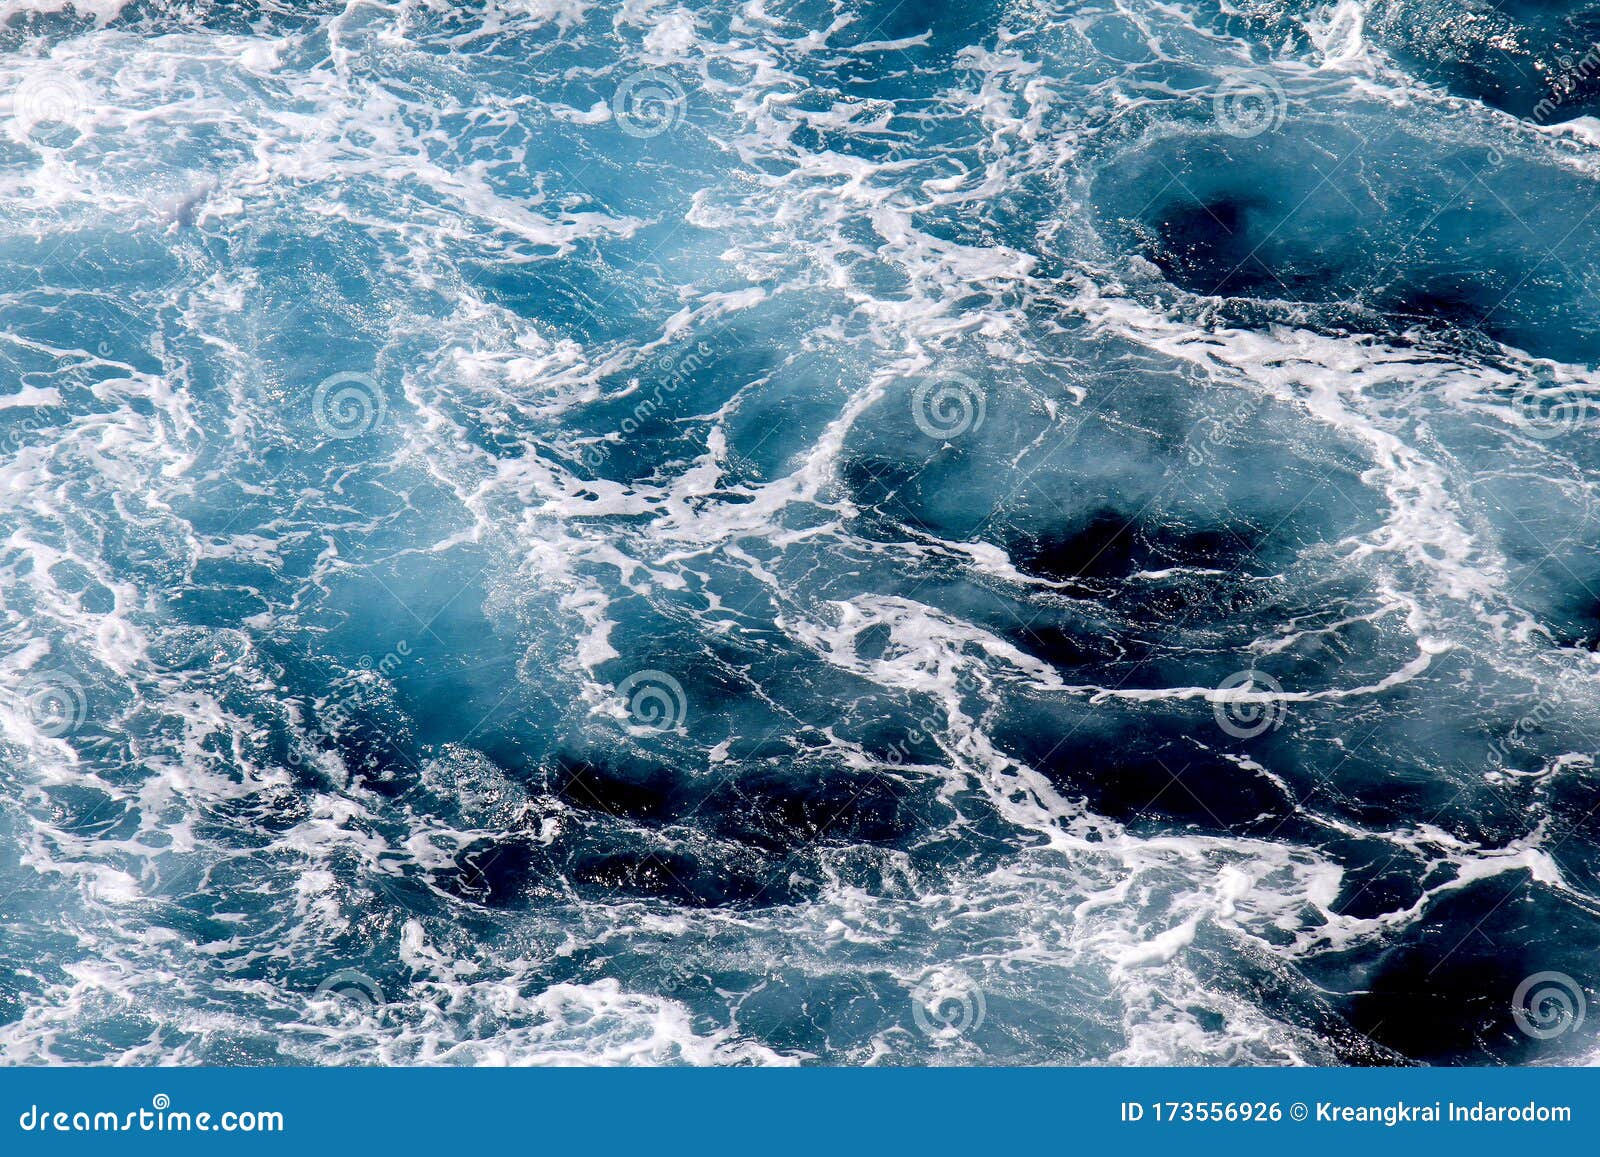 Ocean Waves Wallpaper (Đại dương sóng): Với thiết kế đầy màu sắc và động hình, hình nền Đại dương sóng sẽ khiến ai nhìn vào cũng phải cảm thấy thích thú. Các sóng biển được tạo hình sinh động và sống động, không khí trong lành và tươi mới sẽ mang đến cho bạn một trải nghiệm tuyệt vời khi sử dụng hình nền này.